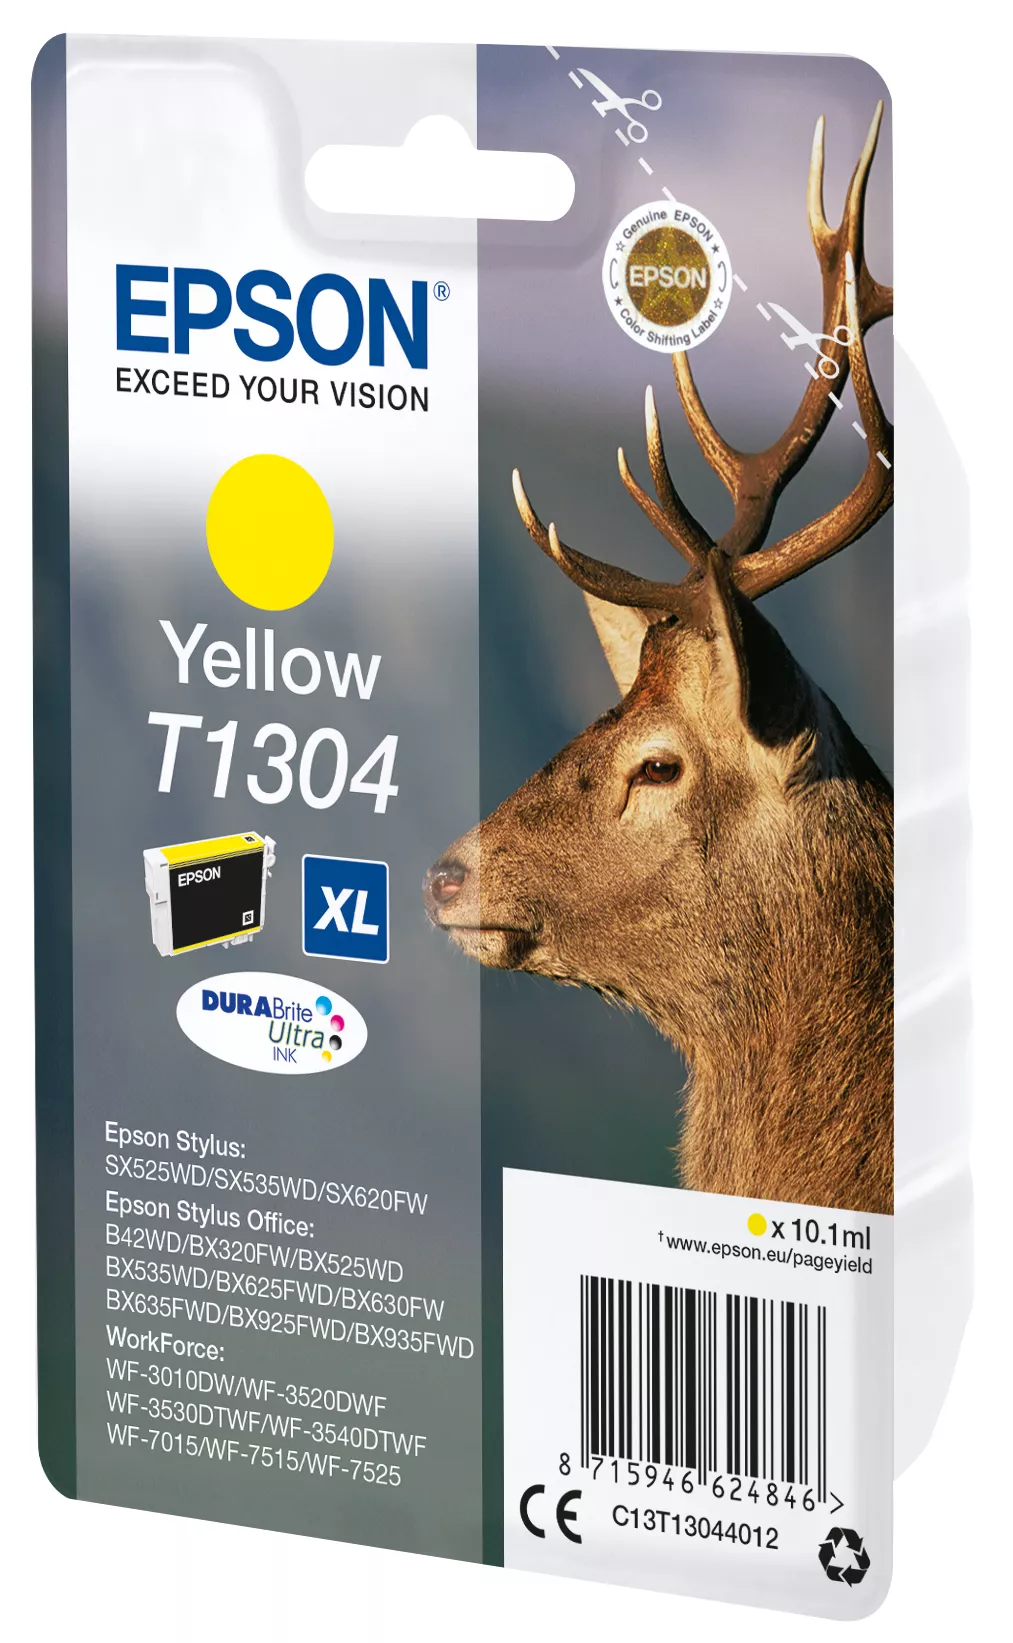 Vente EPSON T1304 cartouche d encre jaune très haute Epson au meilleur prix - visuel 2